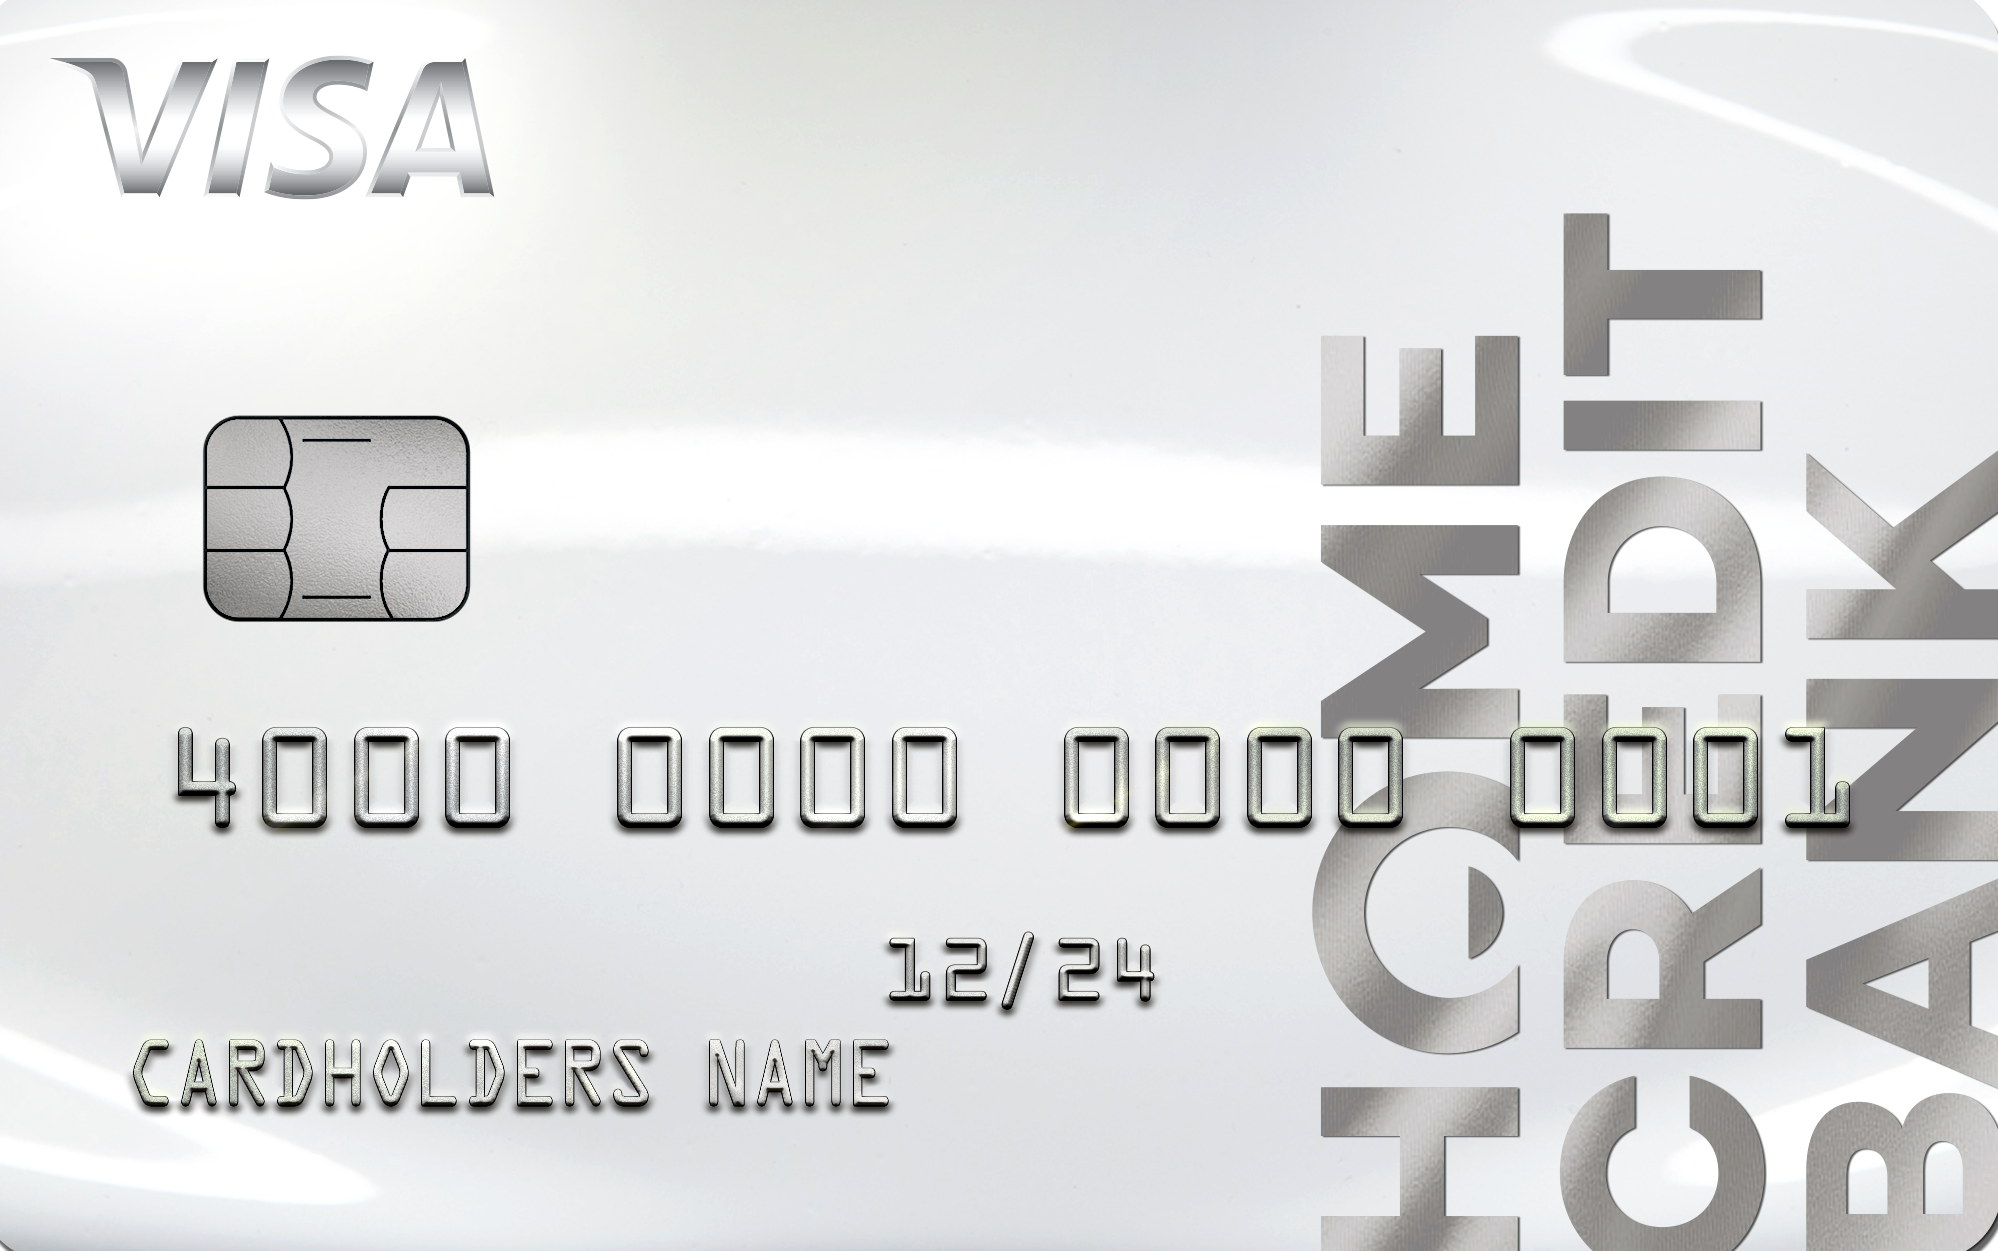 Хоум кредит карта кредитная 100 дней без процентов оформить онлайн в июля 2021 года планируется взять кредит в